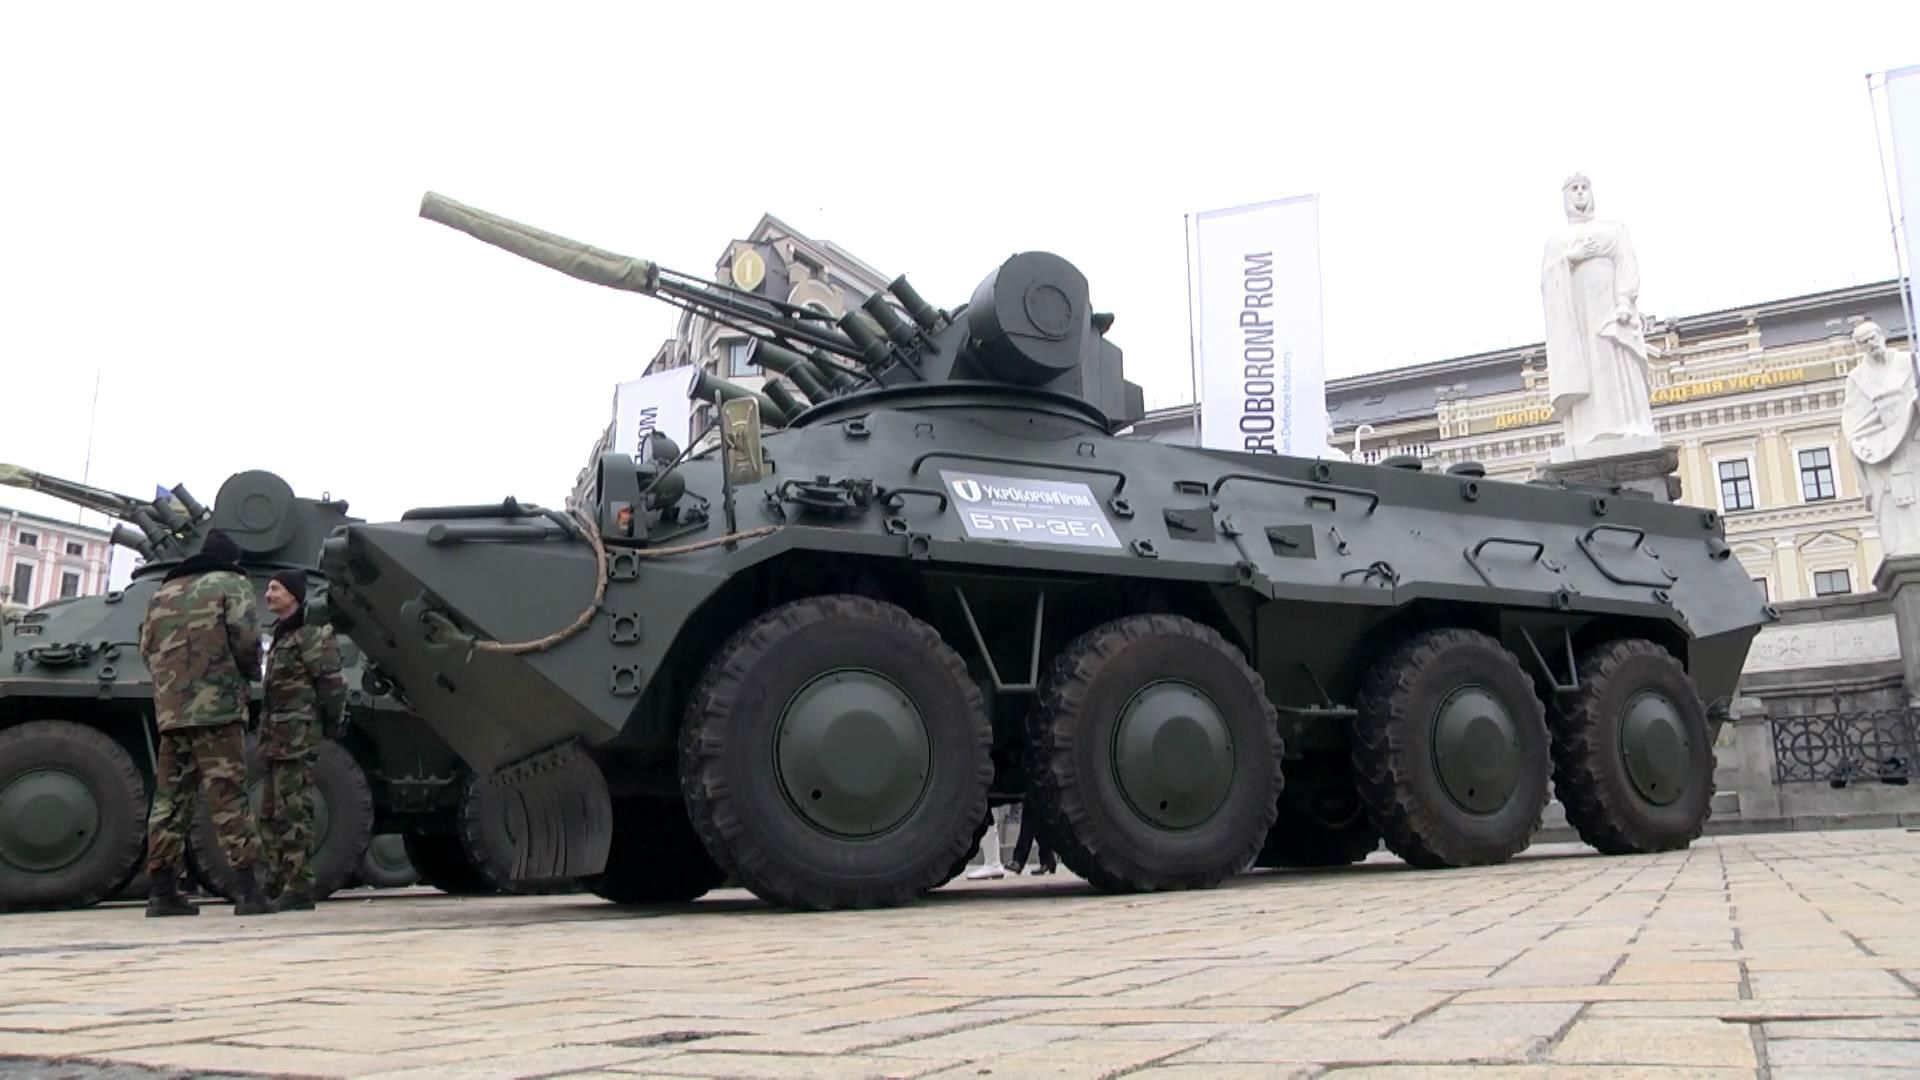 Аутентичную украинскую военную технику представили в самом в центре столицы